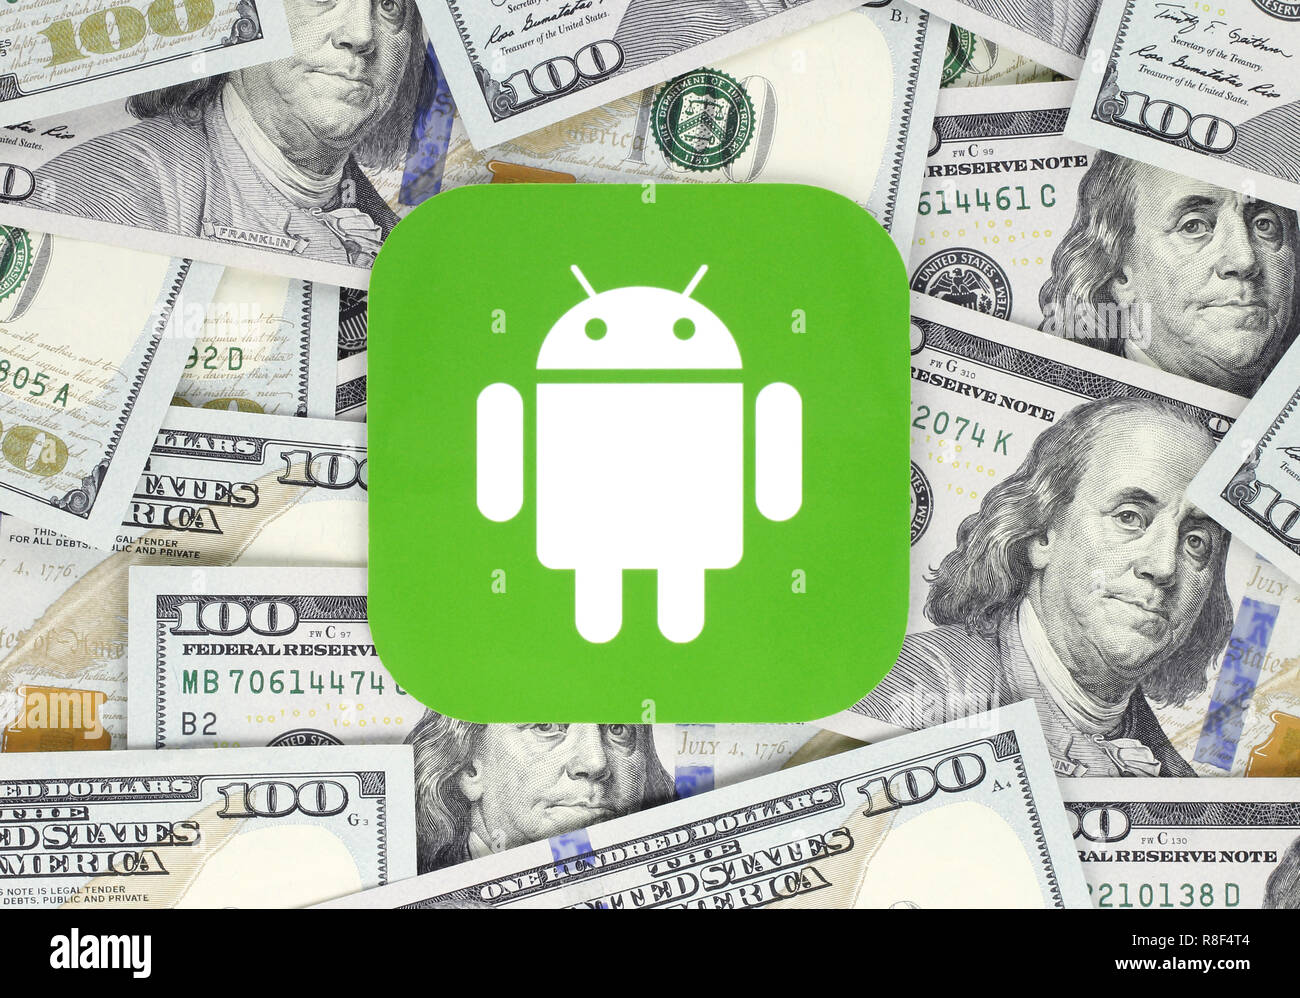 Kiev, Ukraine - 18 septembre 2018 : l'icône Android imprimée sur du papier, couper et placé sur le fond. Android est un système d'exploitation mobile. Banque D'Images